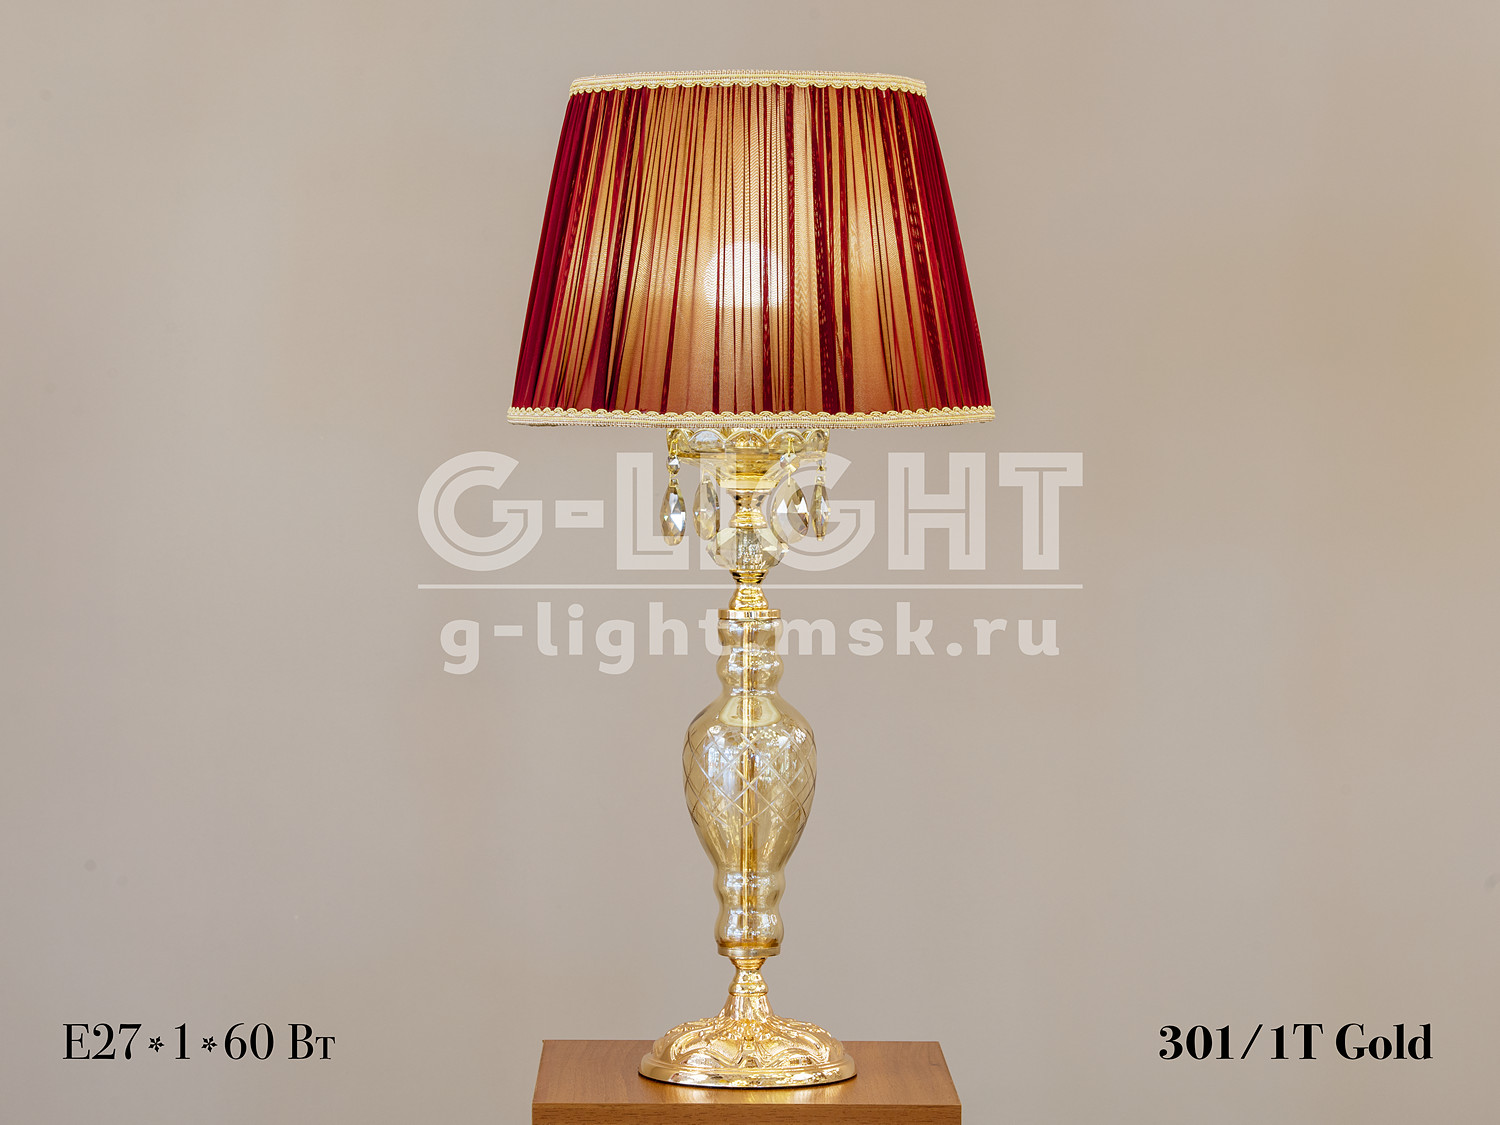 Настольная лампа G-Light 301/1T Gold - изображение 6